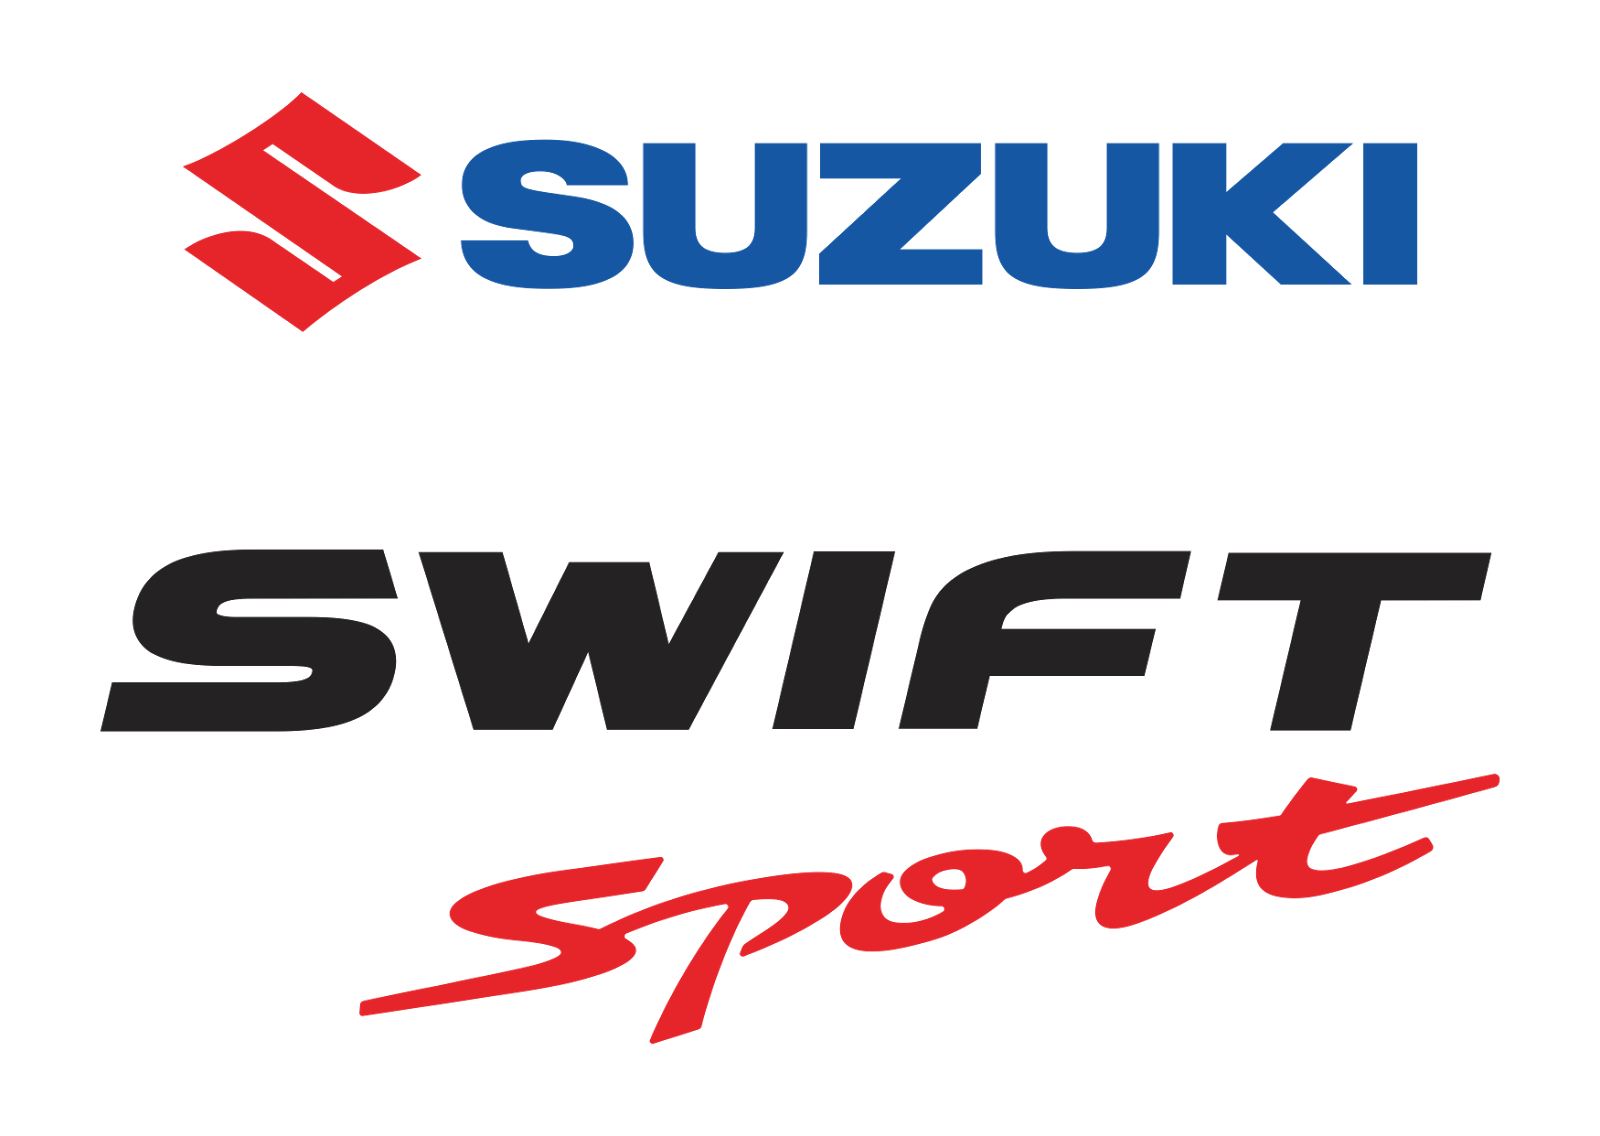 suzuki ecstar logo